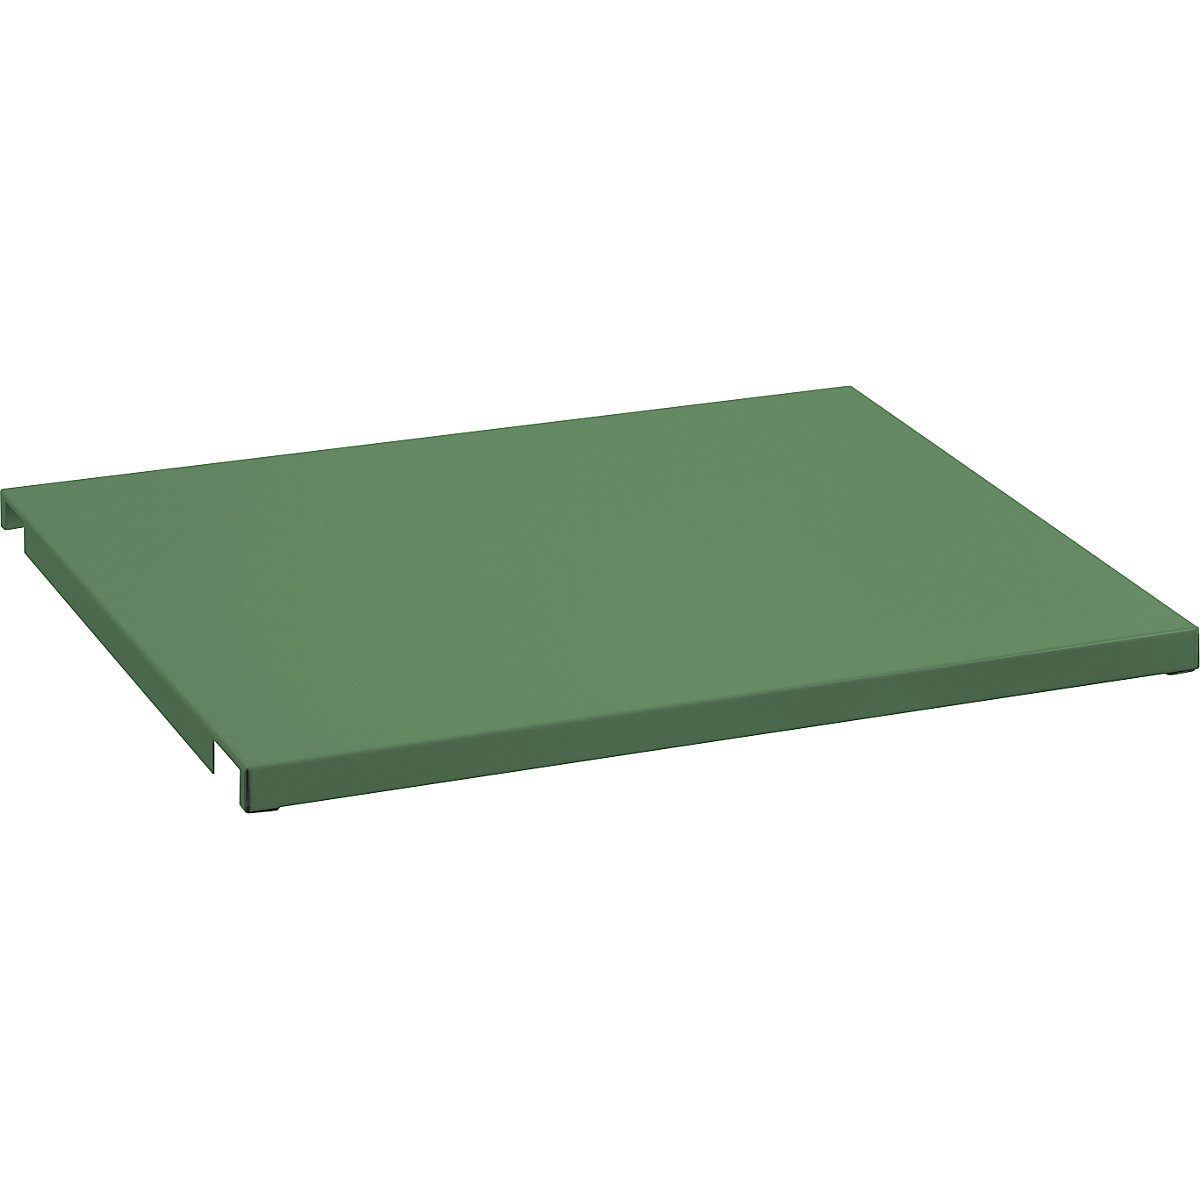 Plechové zakrytí pro pevný rám – LISTA, pro š x h 1290 x 860 mm, rezedová zelená-3